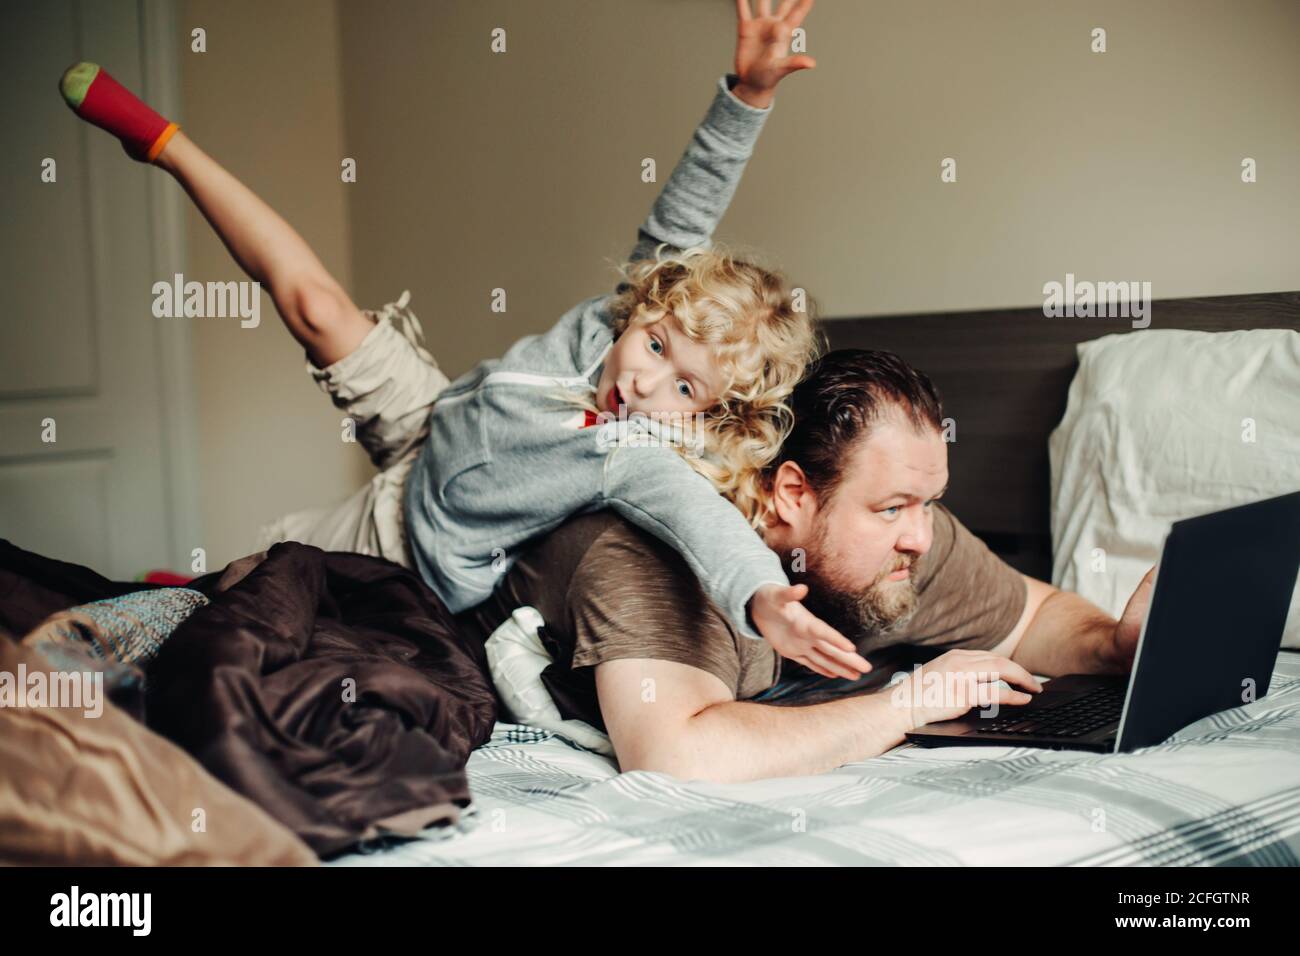 Arbeiten Sie von zu Hause aus mit Kindern. Vater arbeitet am Laptop im Schlafzimmer mit Kind Tochter auf dem Rücken. Lustige ehrliche Familie Moment. Neuer Normalwert während Stockfoto